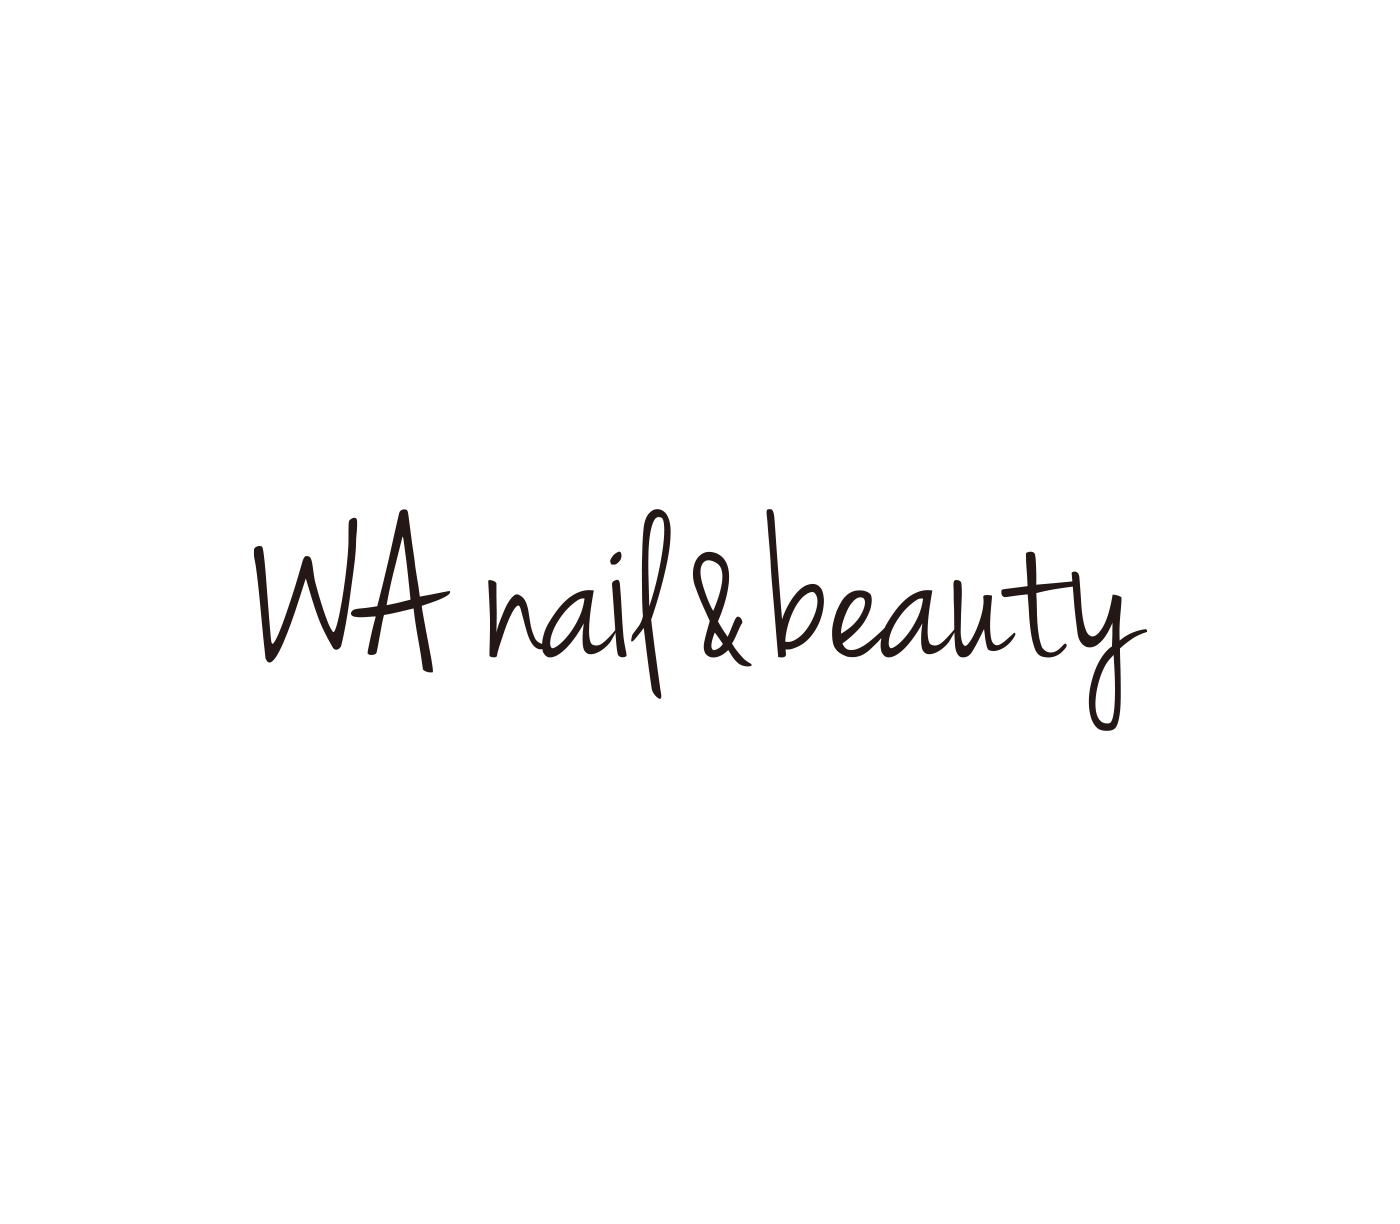 WA nail&beautyロゴ